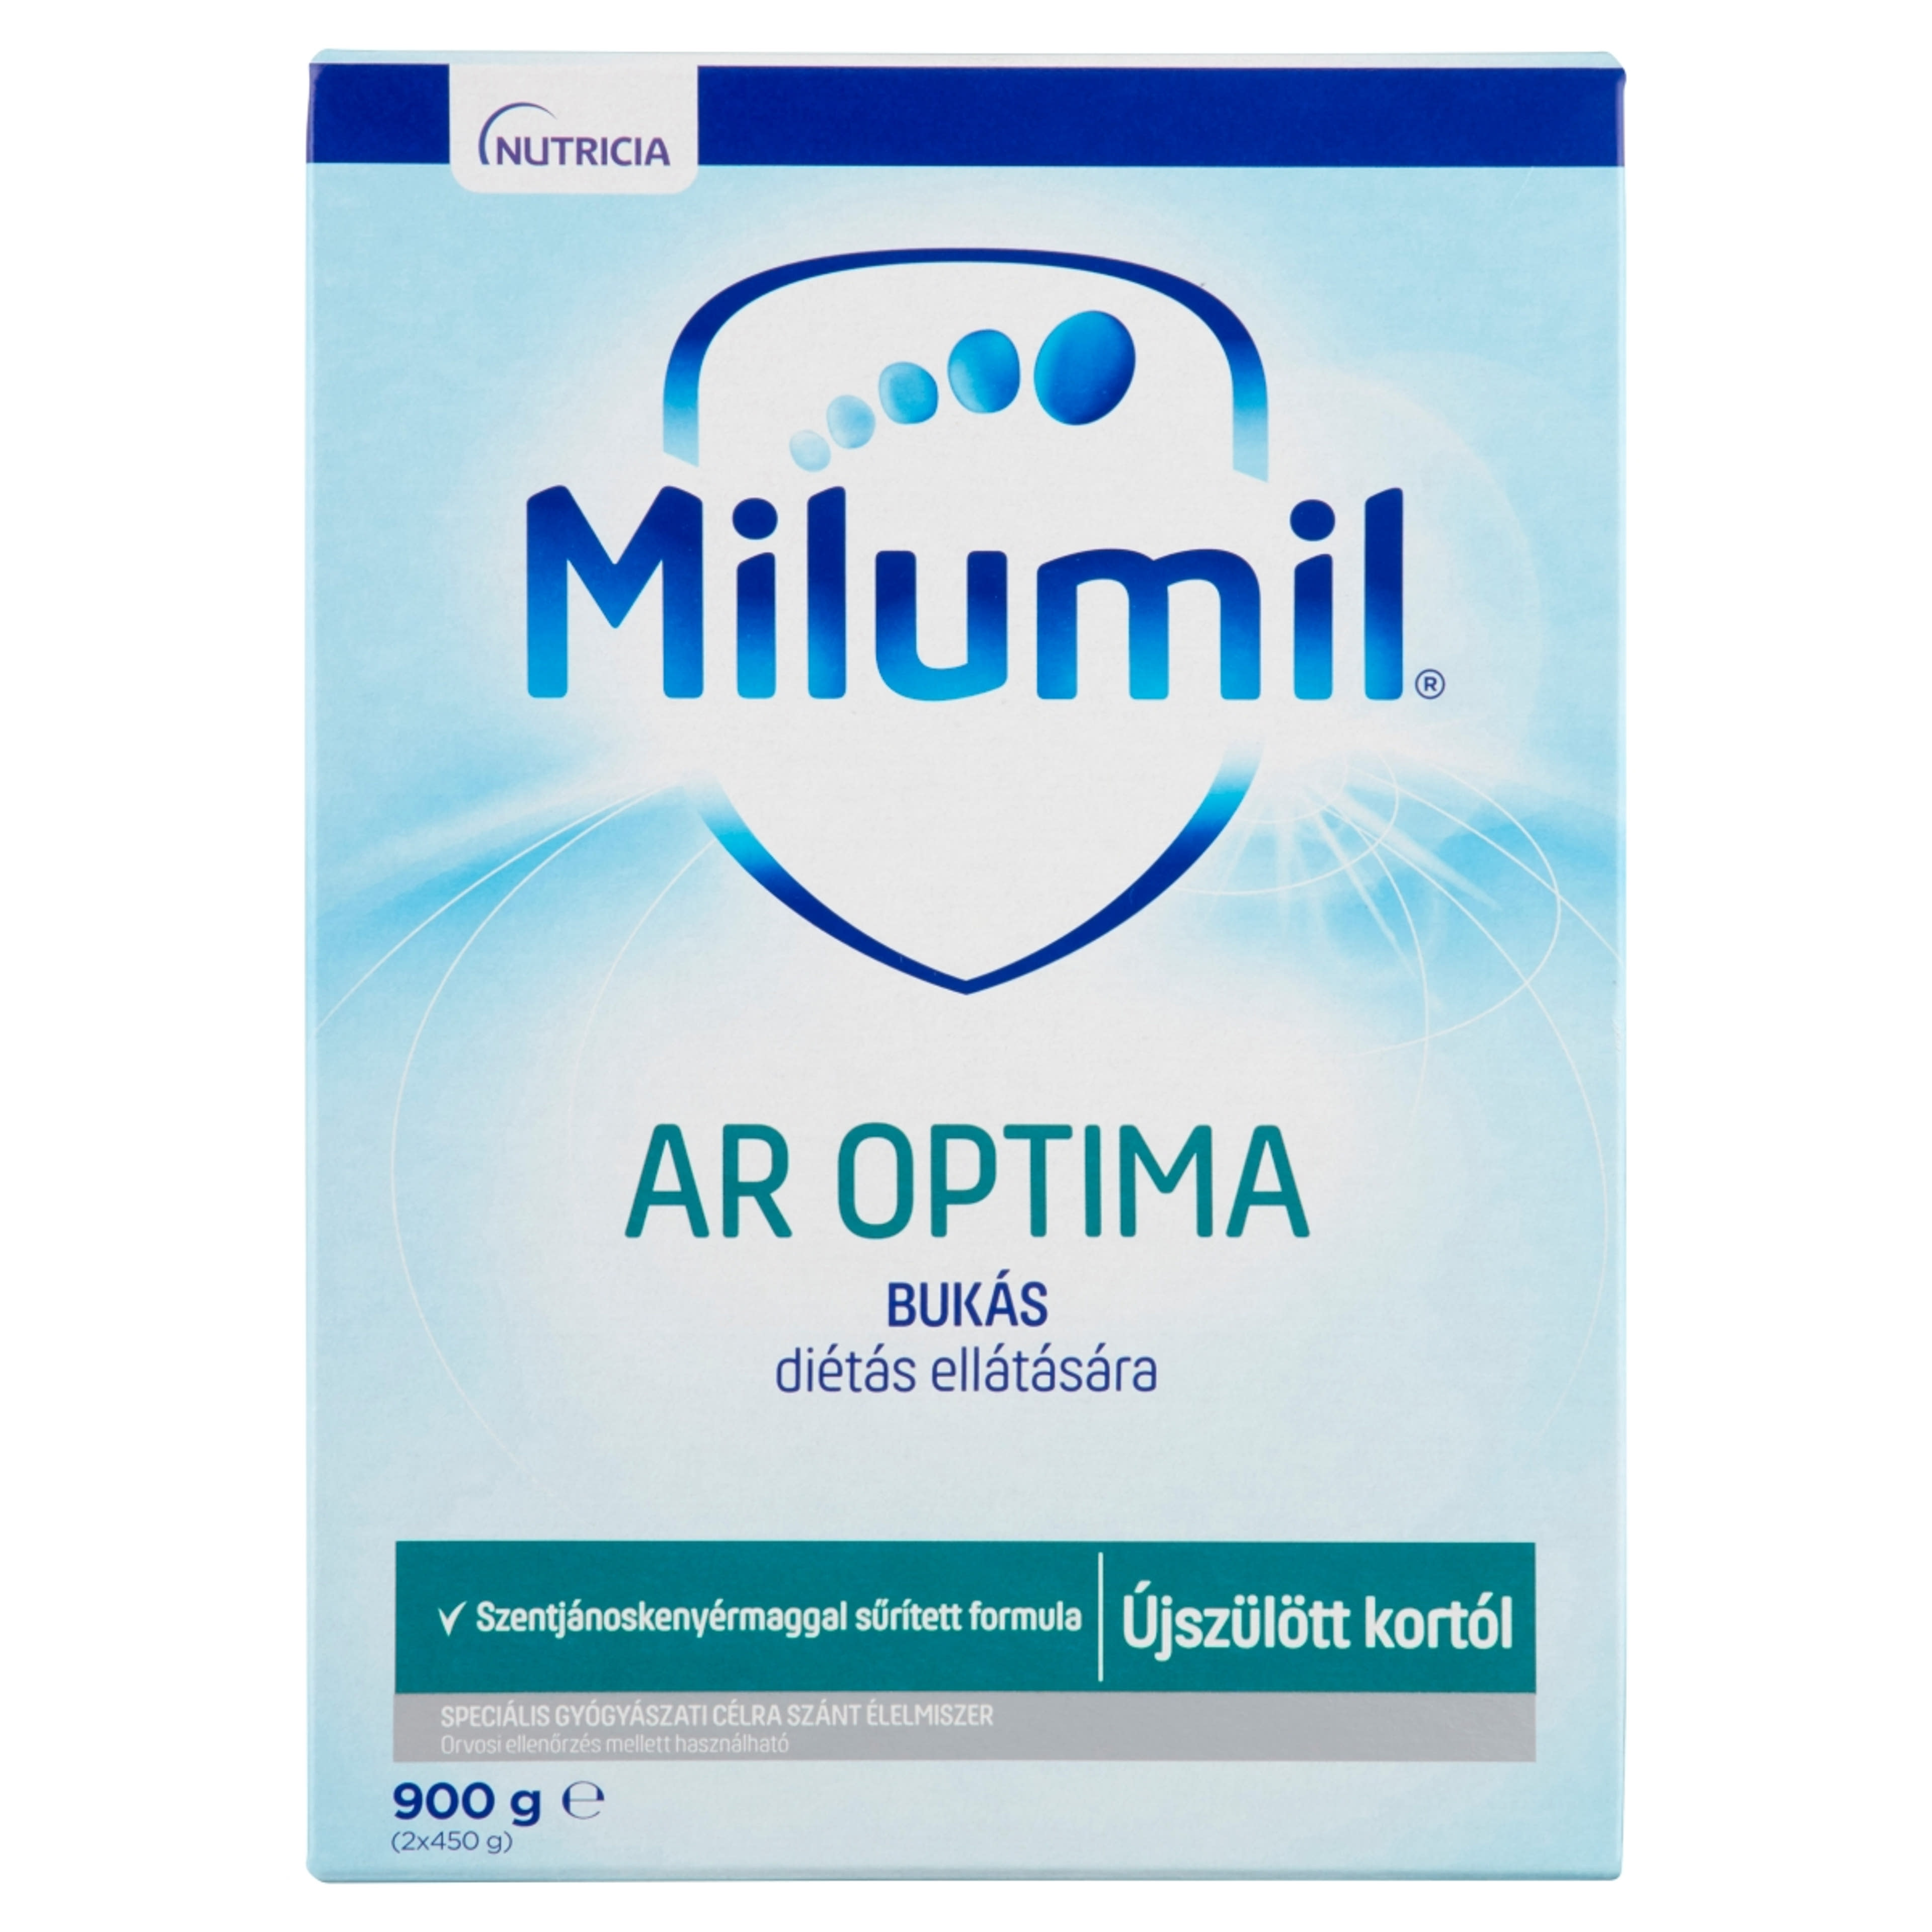 Milumil AR Optima speciális gyógyászati célra szánt élelmiszer 0 hónapos kortól - 900 g